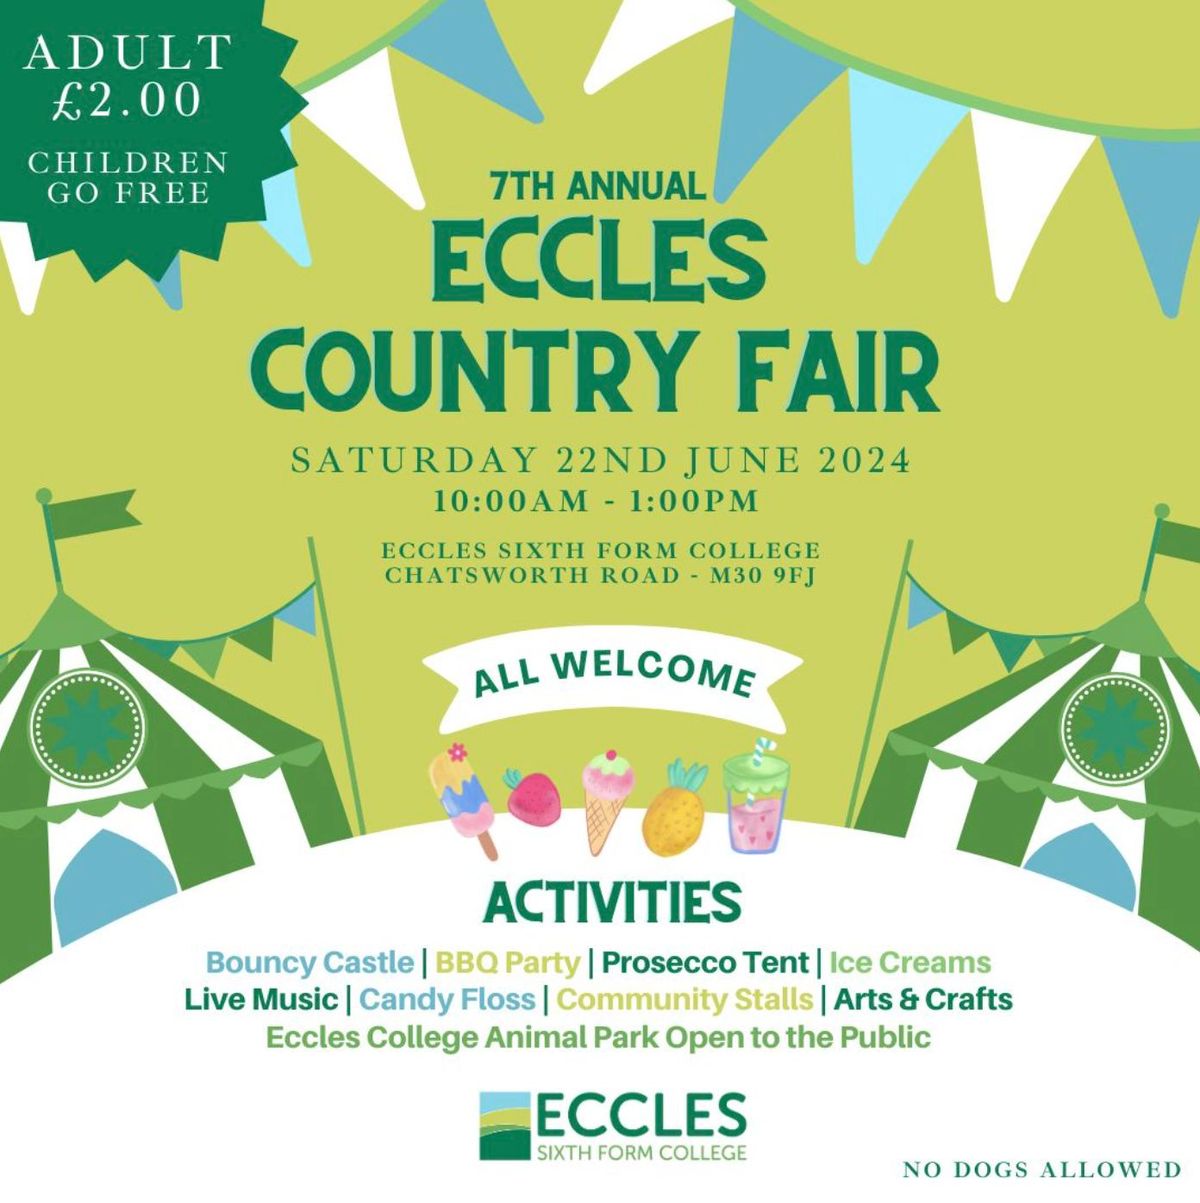 7th Annual Eccles Country Fair